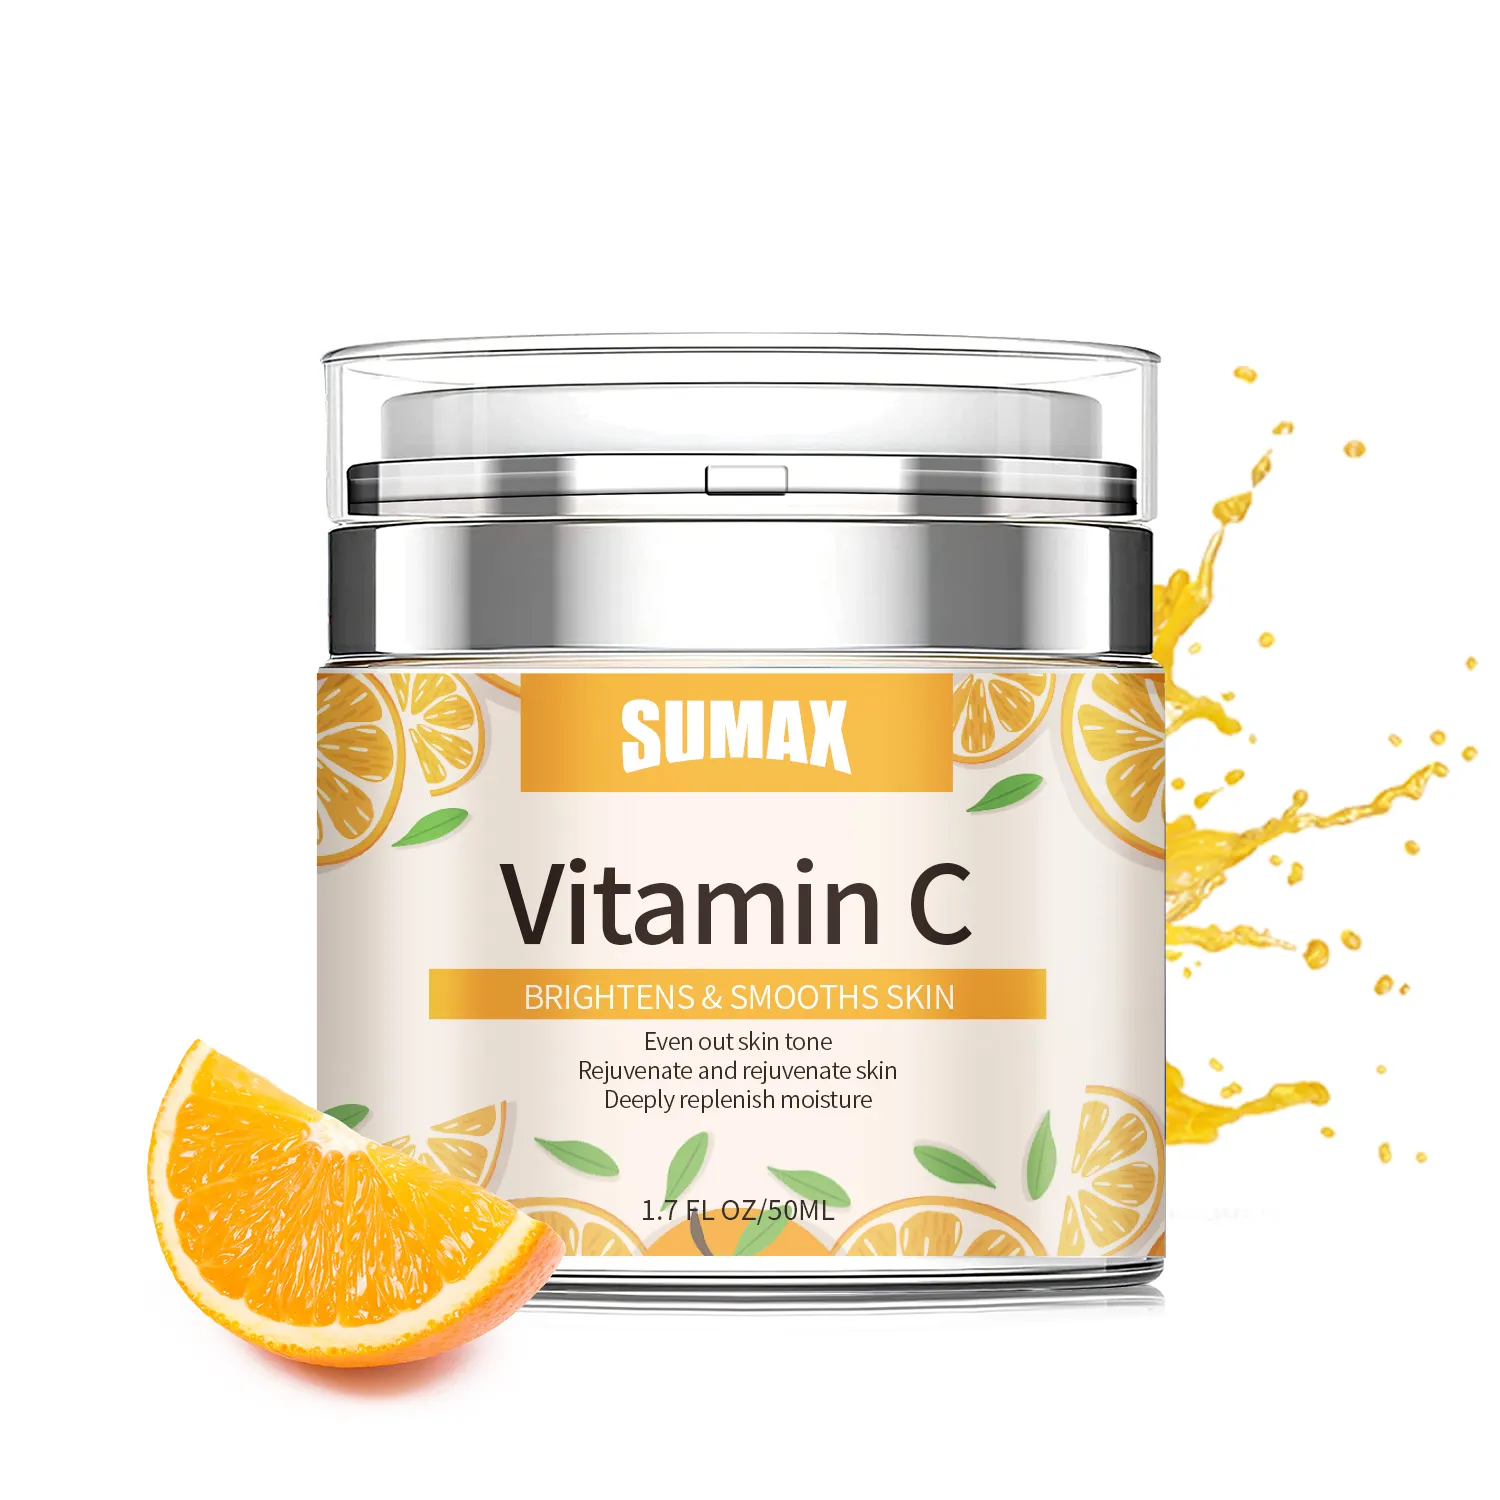 Sumax krim wajah pemutih Vitamin C, produk perawatan kulit bahkan warna kulit